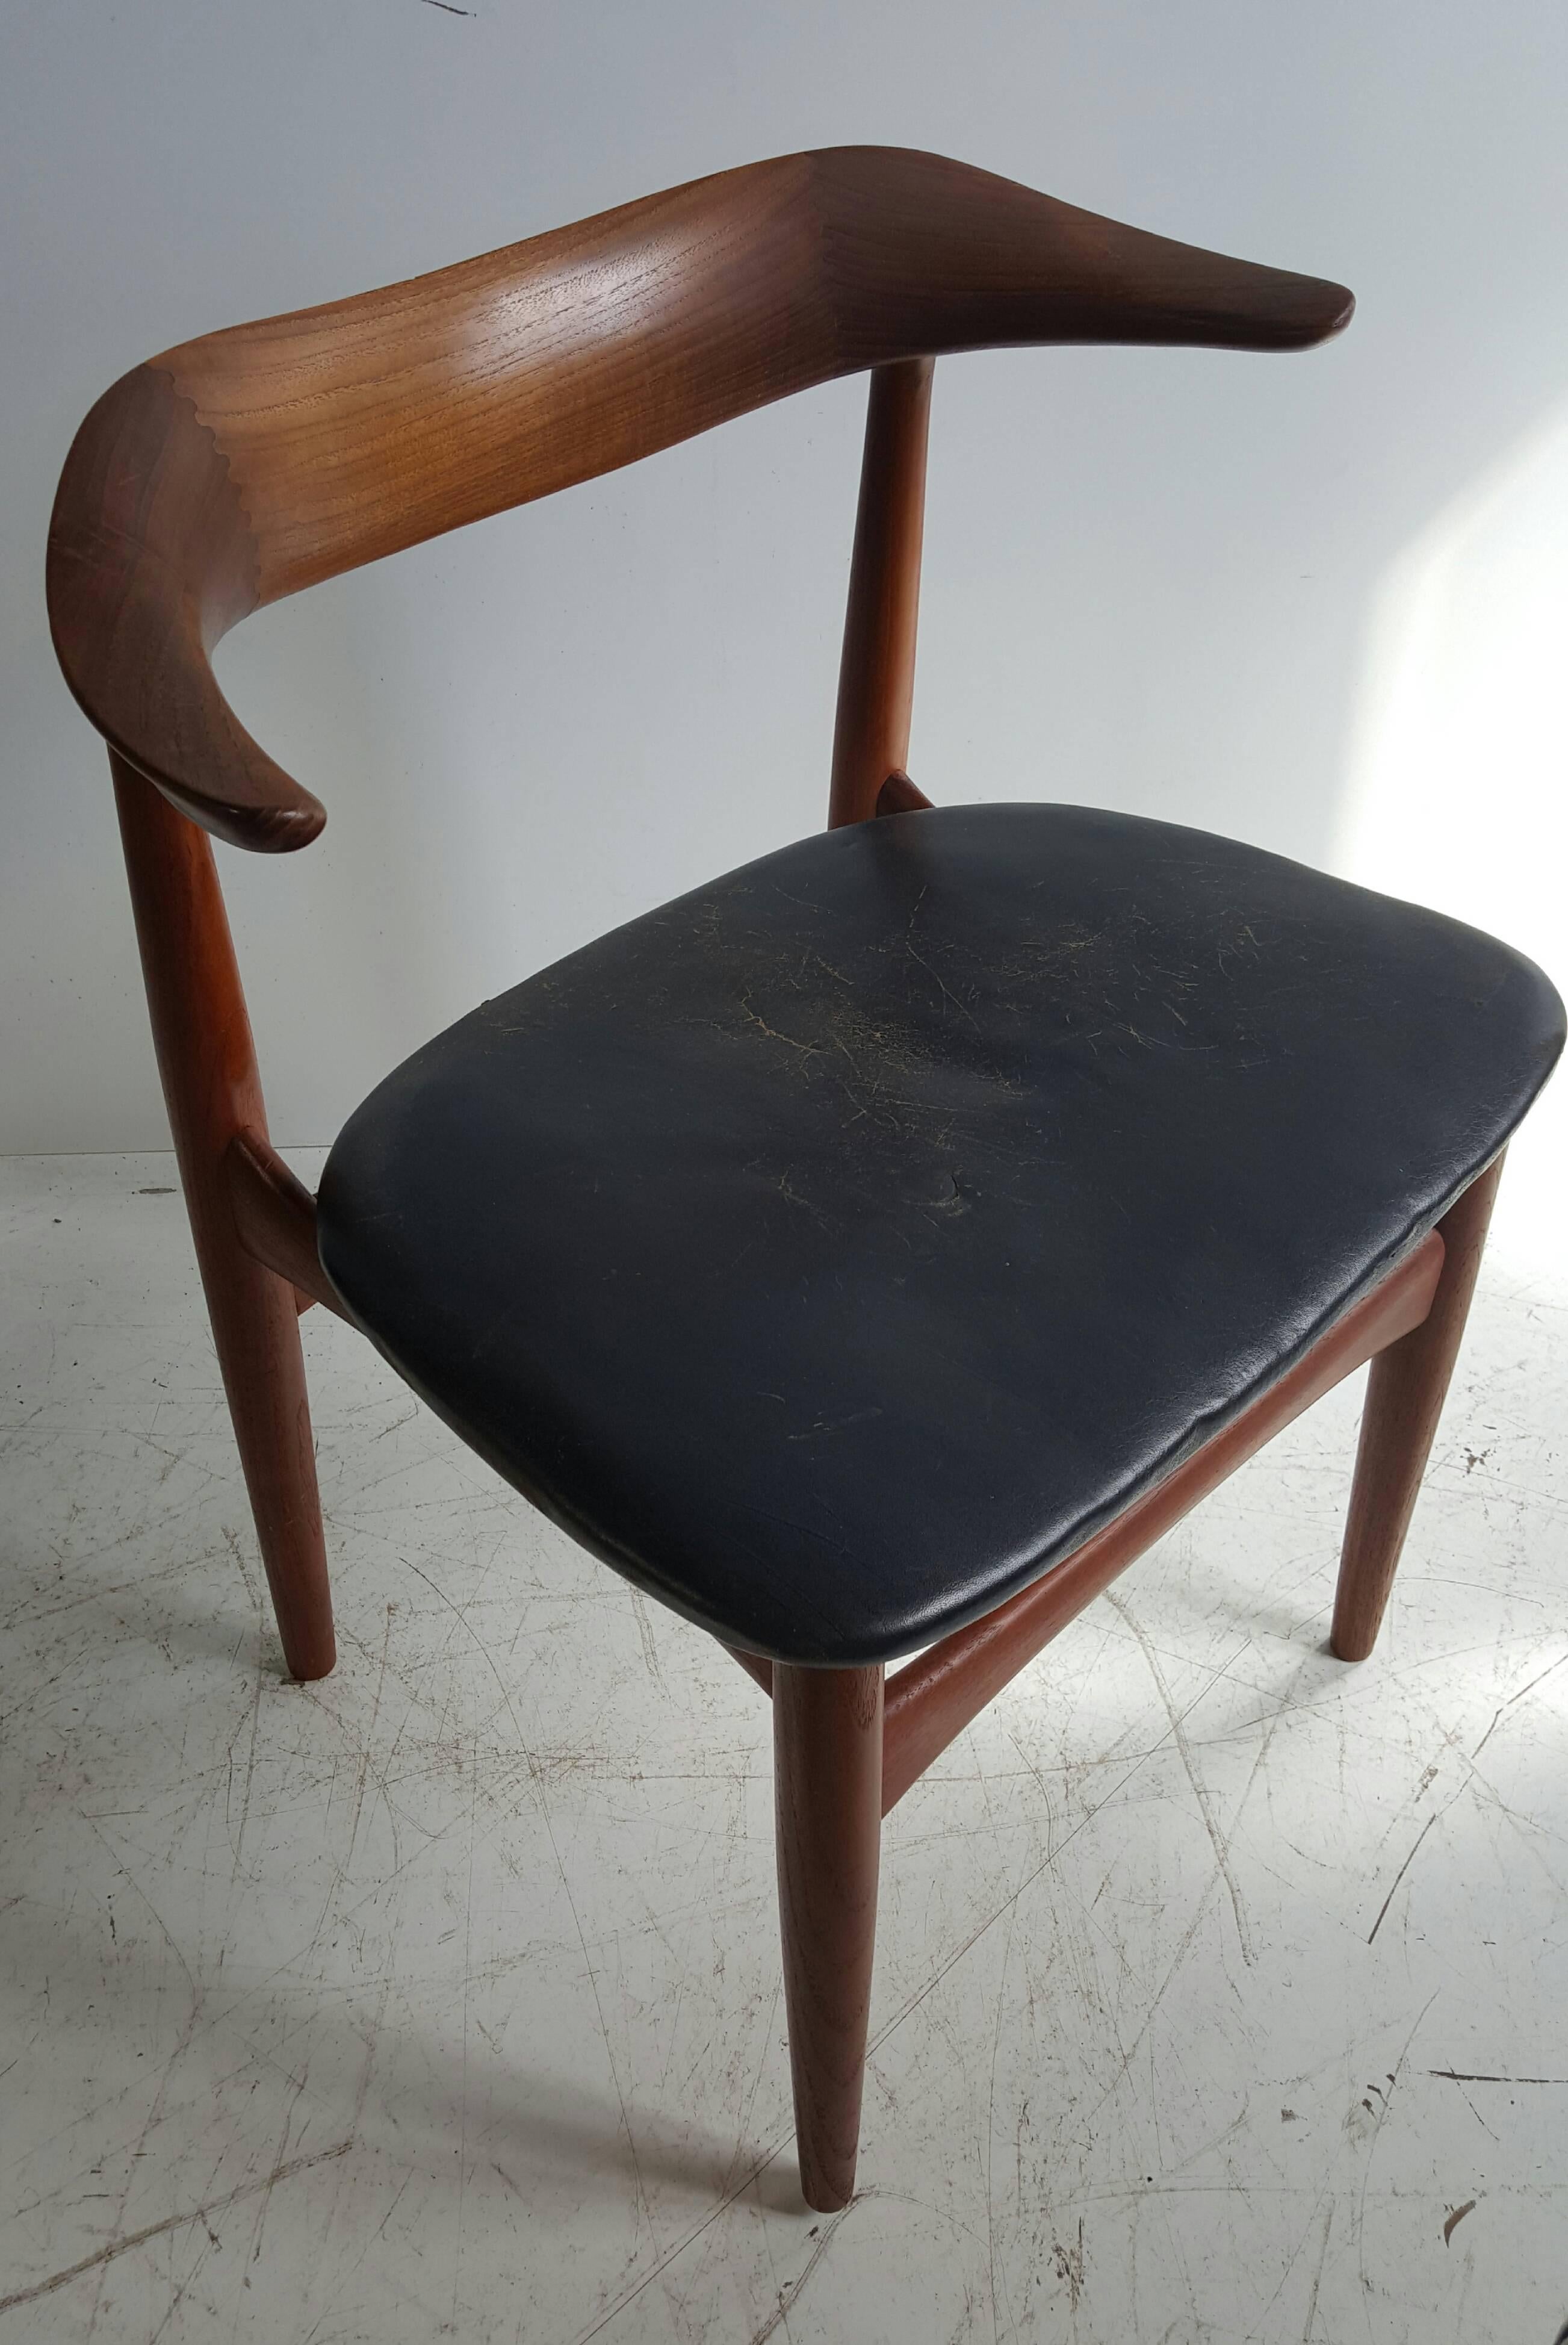 Fauteuil moderne danois en noyer et cuir par Povl Dinesen. Design classique et qualité supérieure, avec de beaux bois tournés et de la menuiserie, ce serait une belle chaise de bureau ou d'appoint. Conserve le coussin de siège en cuir noir d'origine